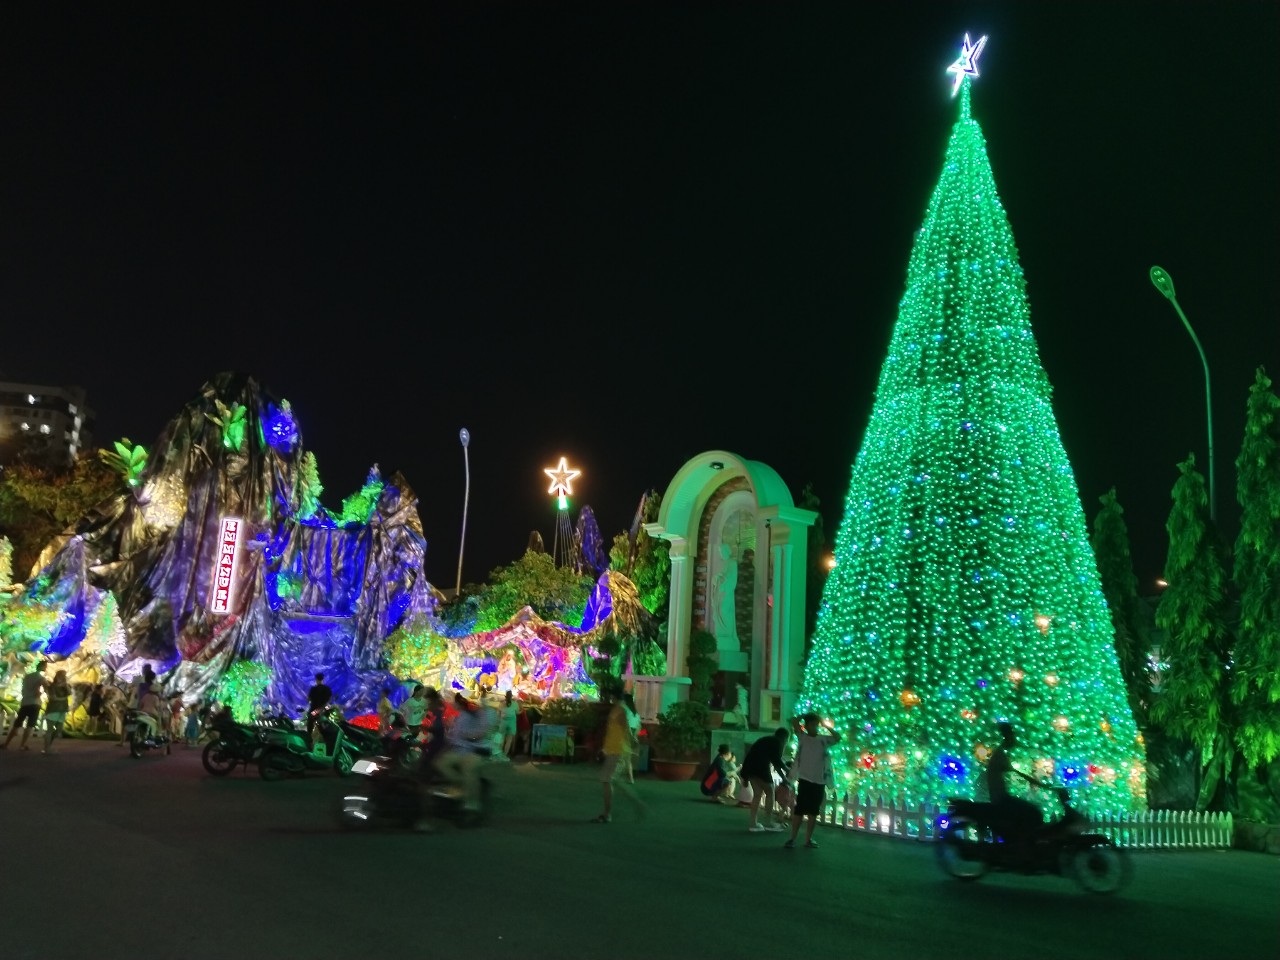 Du lịch Giáng Sinh sẽ mang đến cho bạn trải nghiệm thật tuyệt vời trong mùa lễ hội này. Dạo phố xem những đèn trang trí, tham gia những sự kiện nghệ thuật và thưởng thức những món ăn đặc biệt chỉ có vào mùa Giáng Sinh là những trải nghiệm không thể bỏ lỡ.